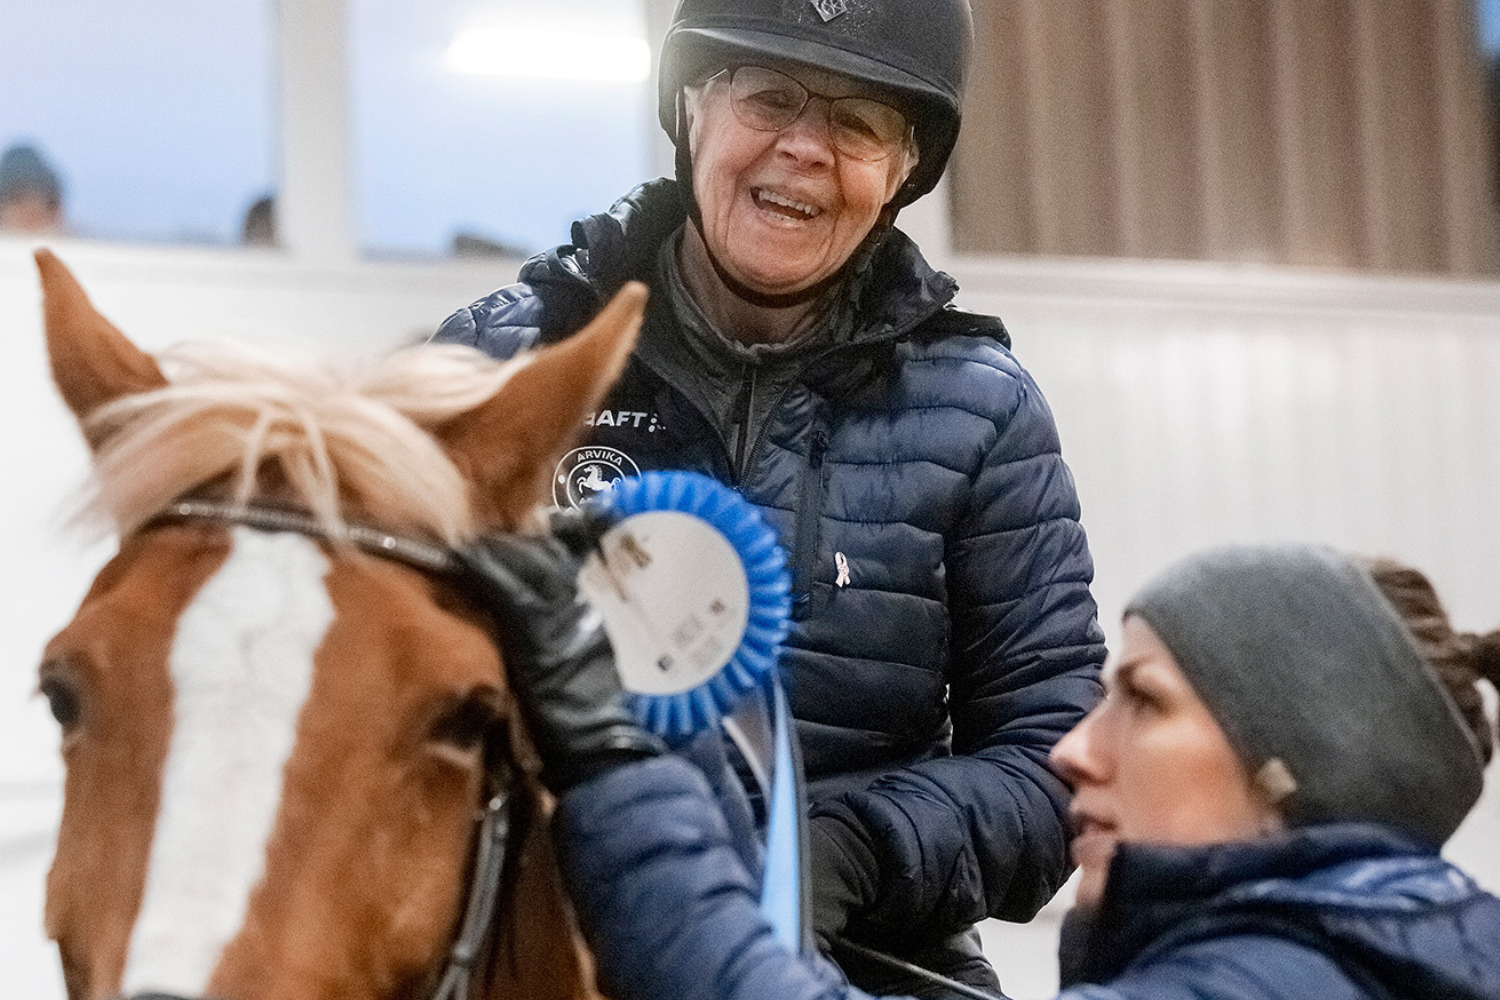 Cays-Marie Persson, 79, älskar ridningen och stunderna med hästarna hos Arvika Ridklubb. Ibland tävlar hon och vinner rosetter.